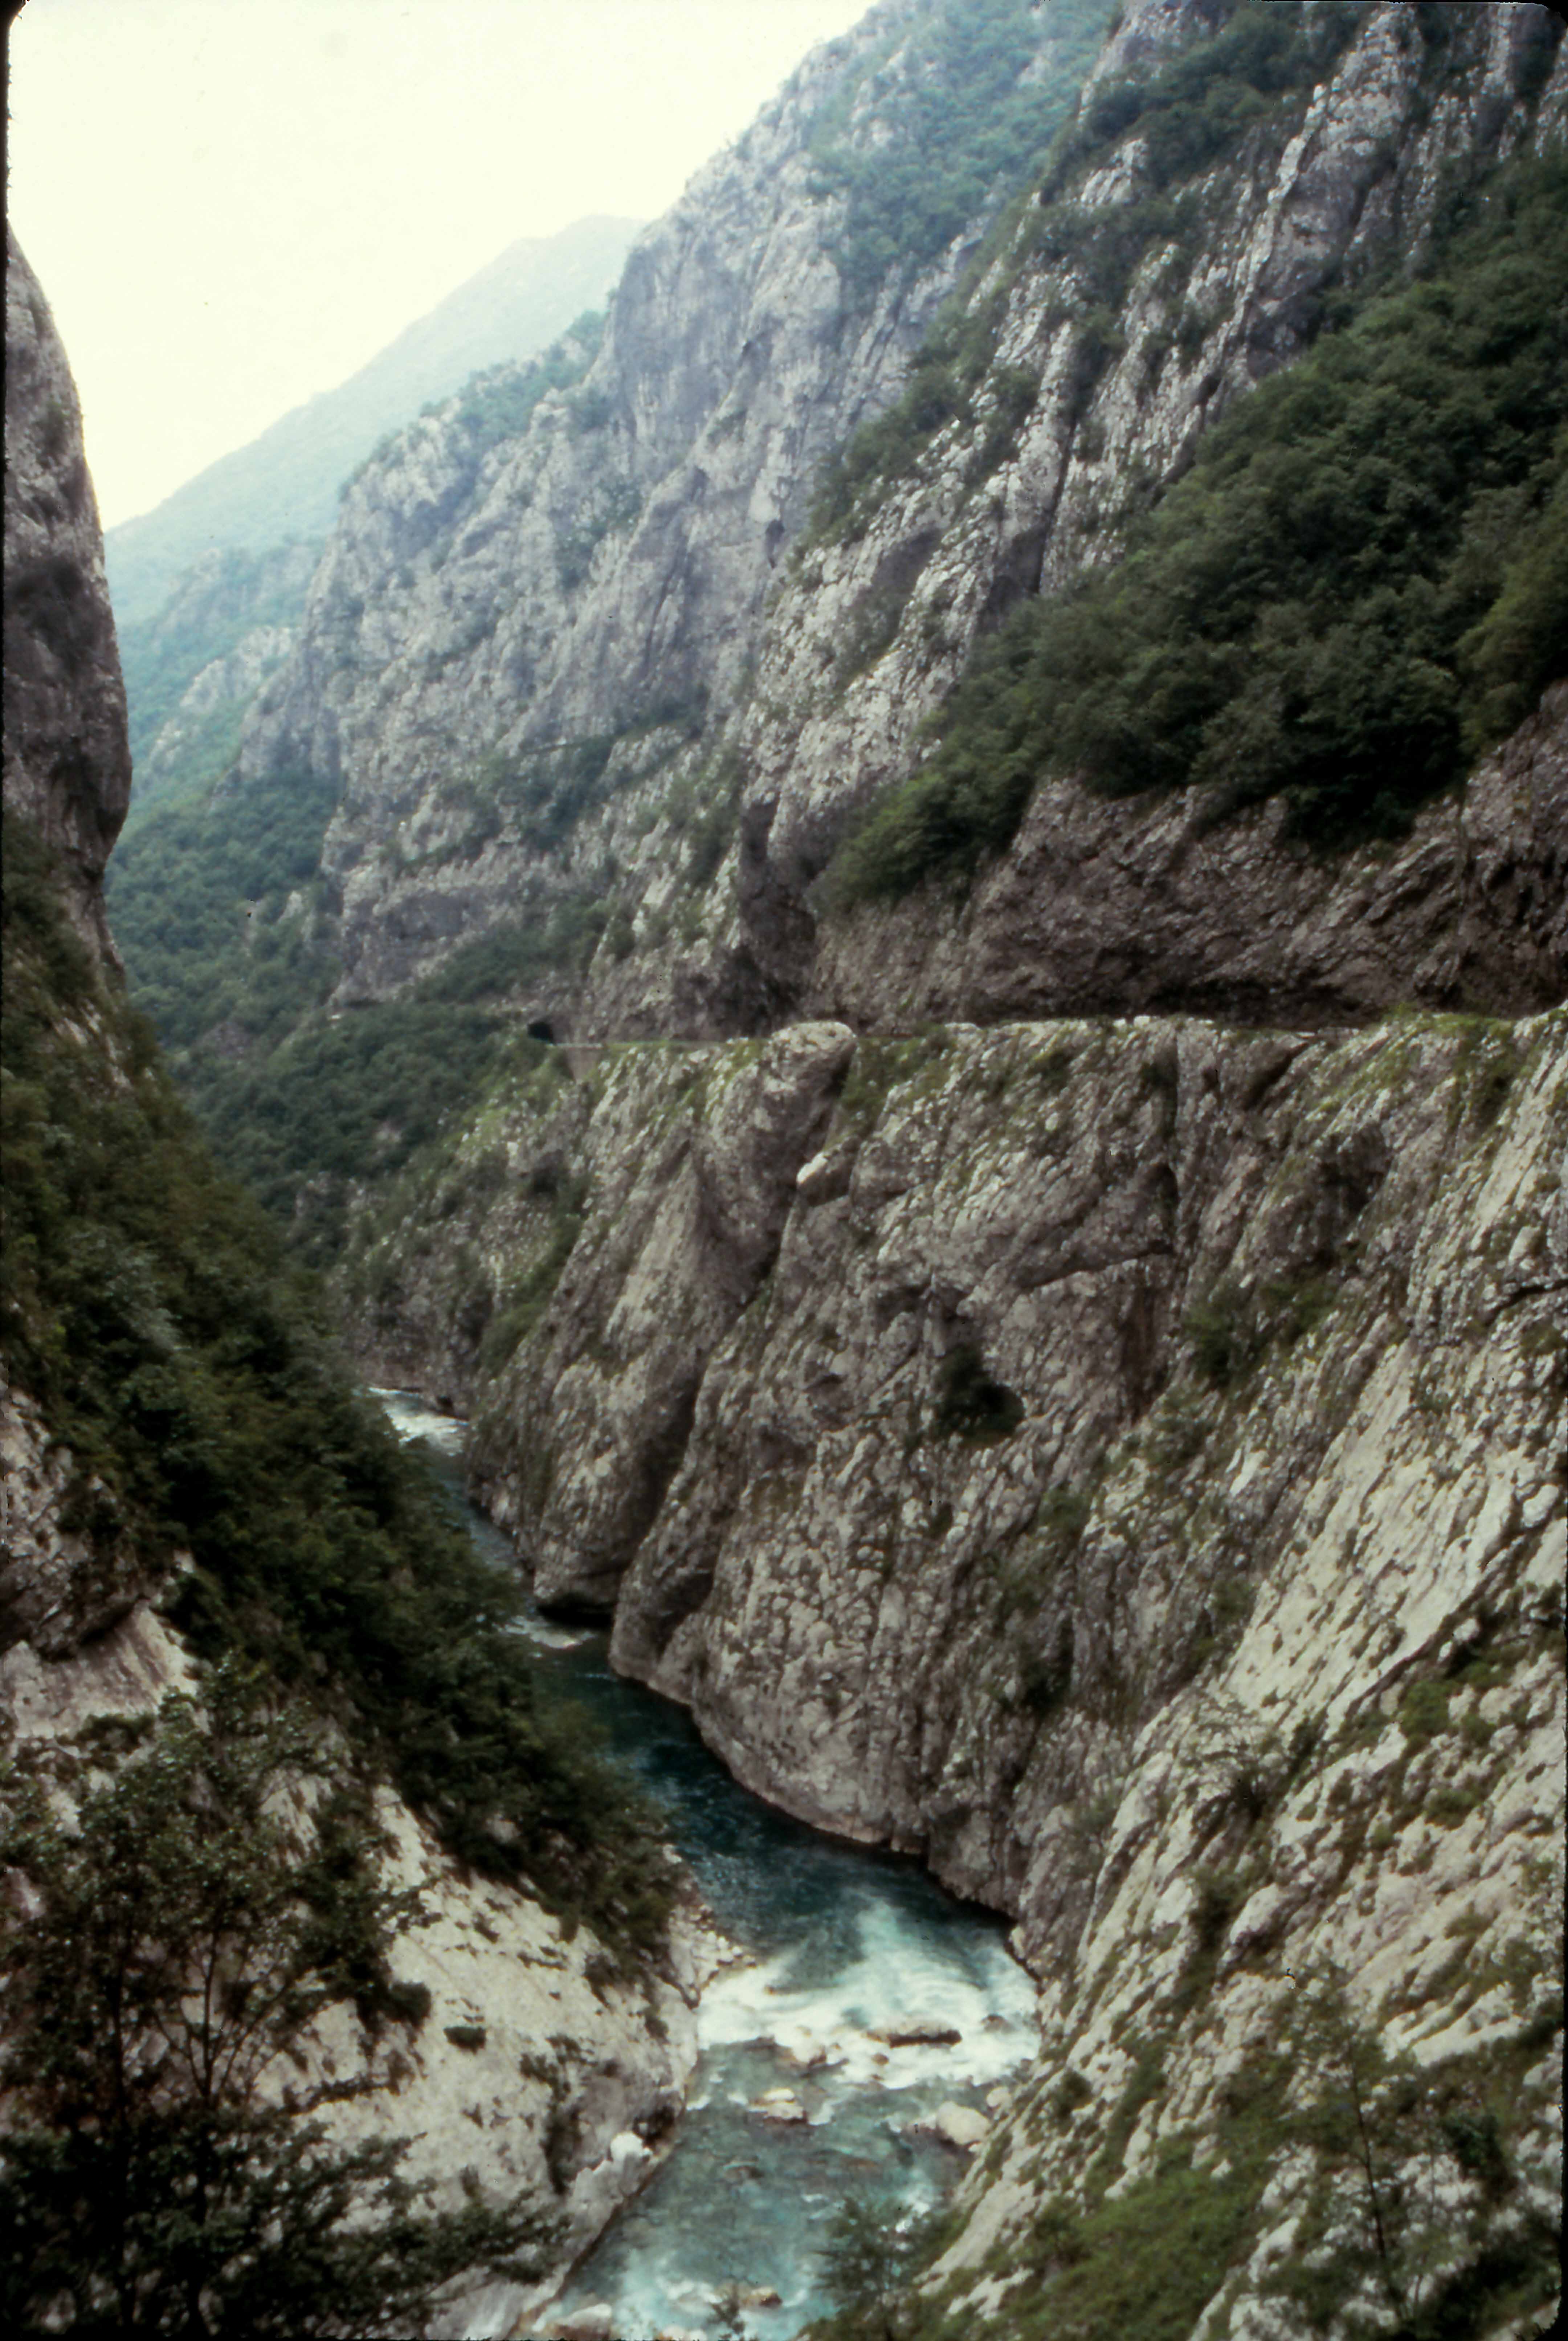 Moraca River Canyon